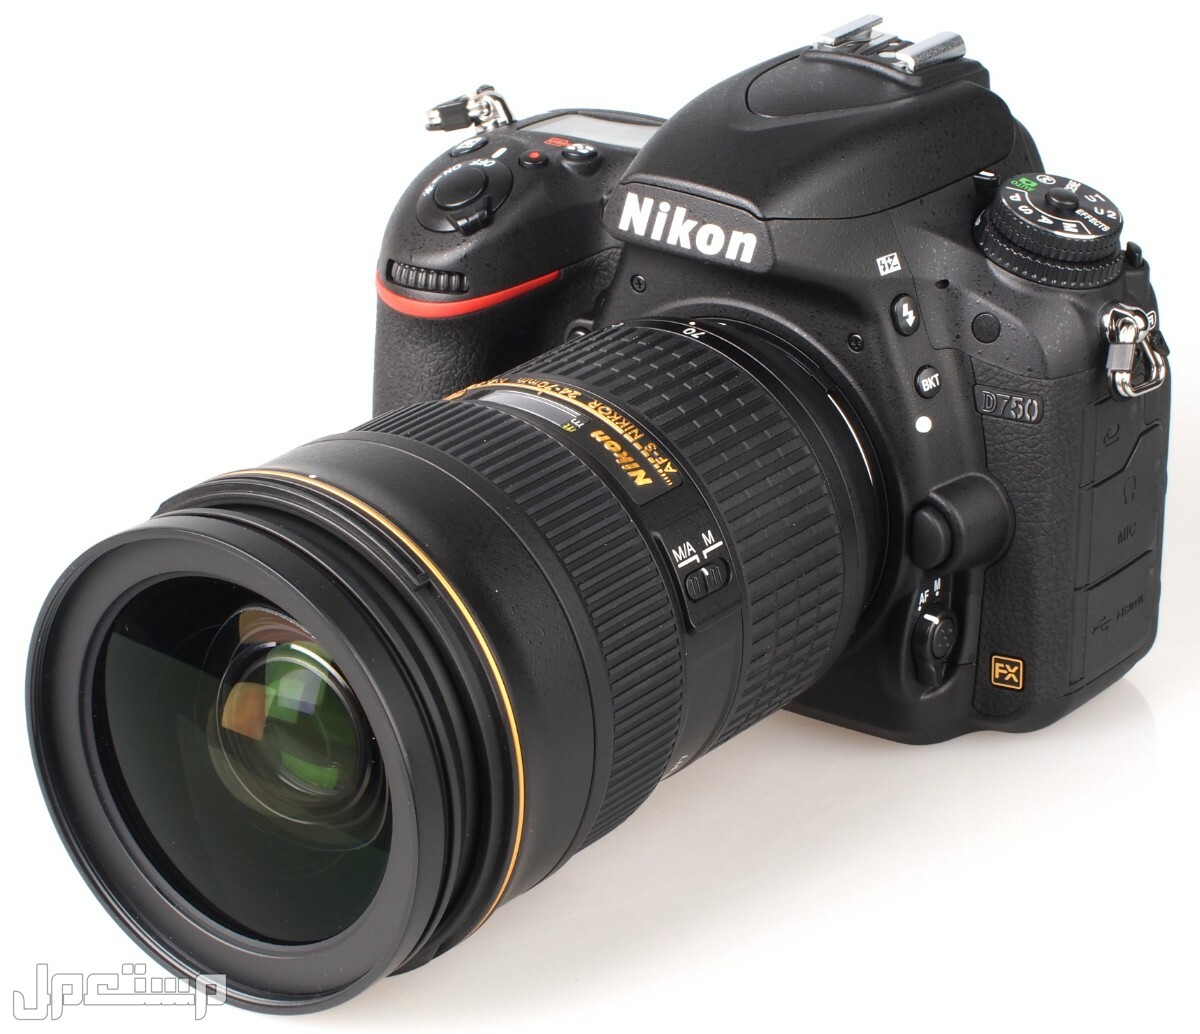 مواصفات ومميزات وأسعار أفضل أنواع كاميرات نيكون للمحترفين في قطر كاميرا Nikon D750